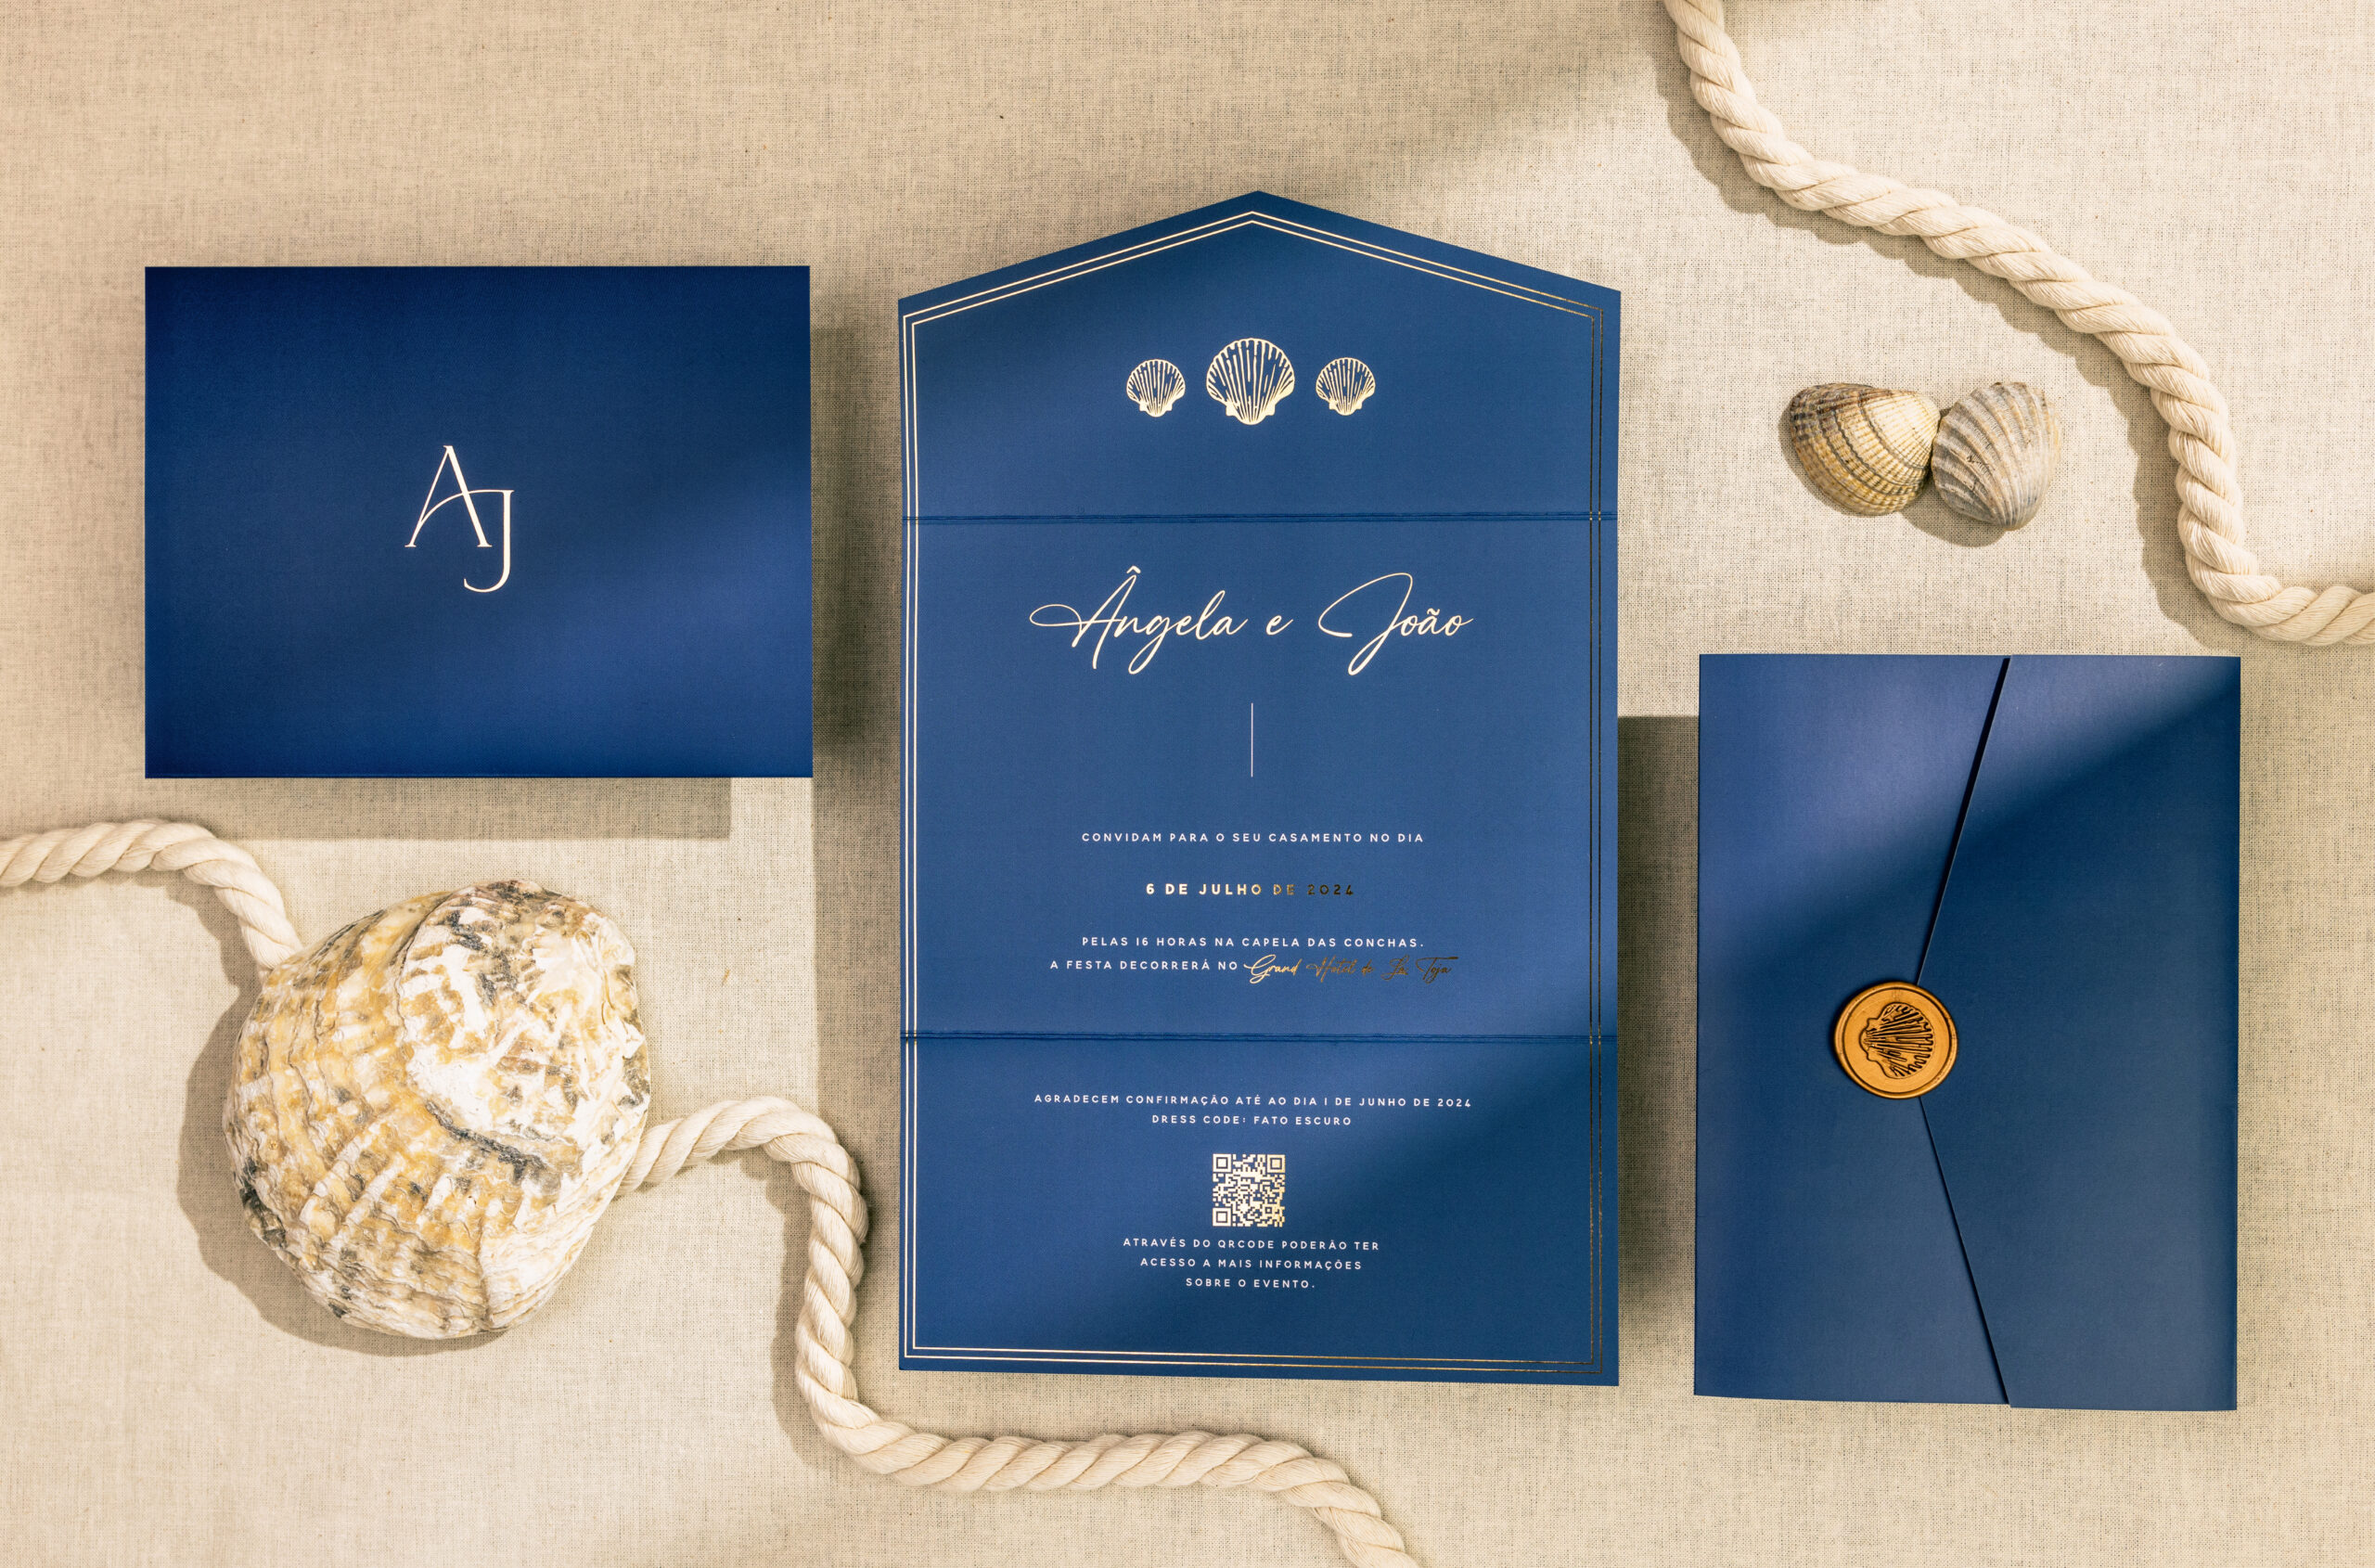 Convite de Casamento com detalhes em dourado e Carta azul marinho com lacre dourado e detalhes em dourado